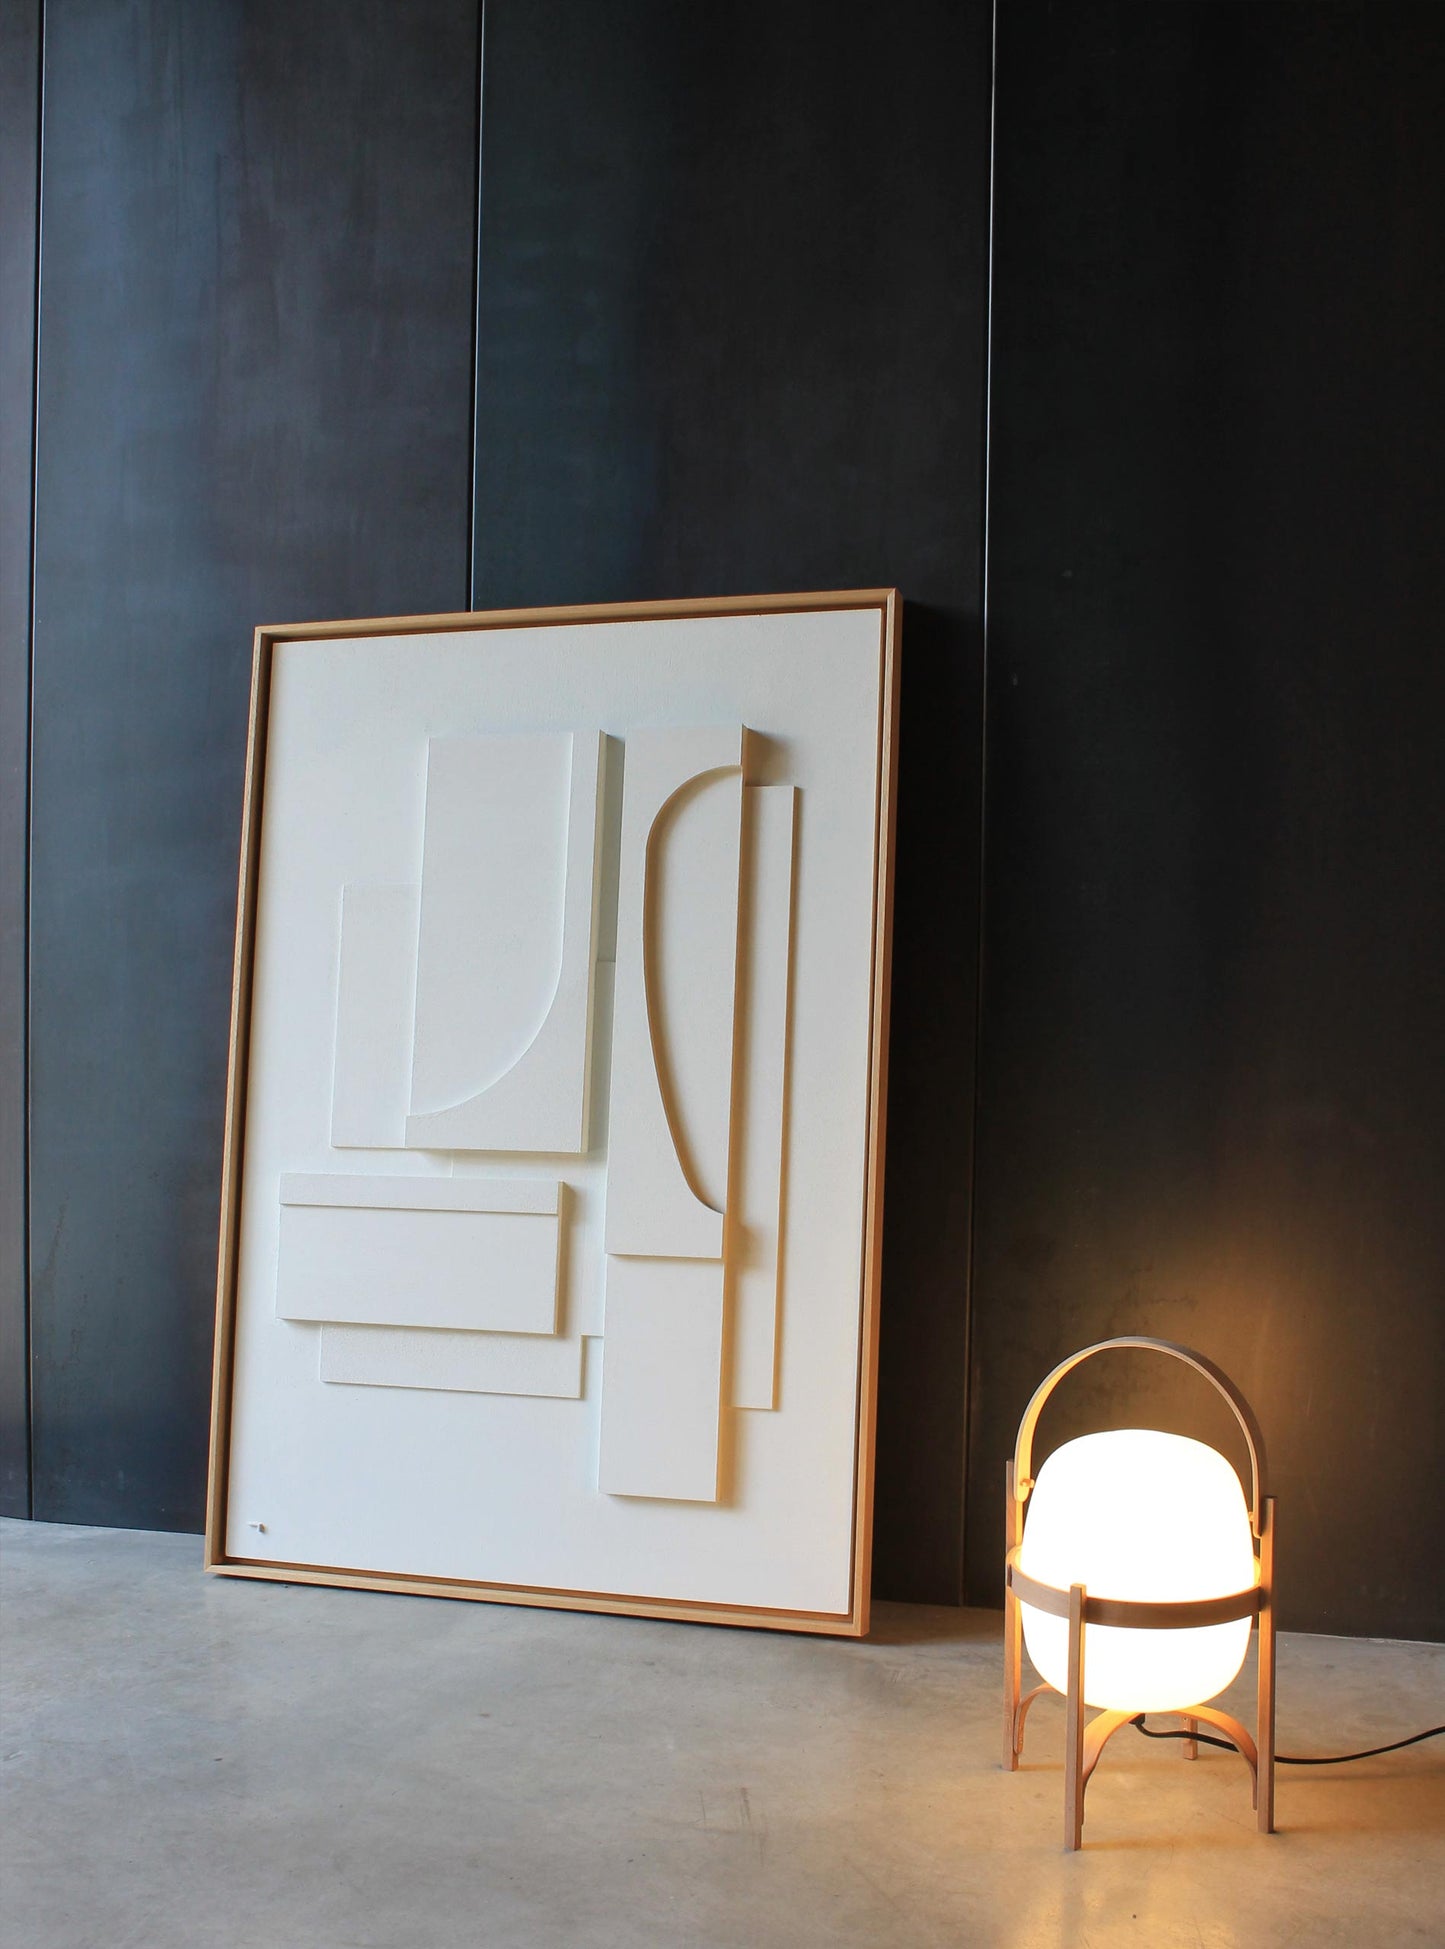 Cuadro blanco grande enmarcado en madera natural. Aparece sobre un fondo negro en una casa moderna de estilo minimalista.